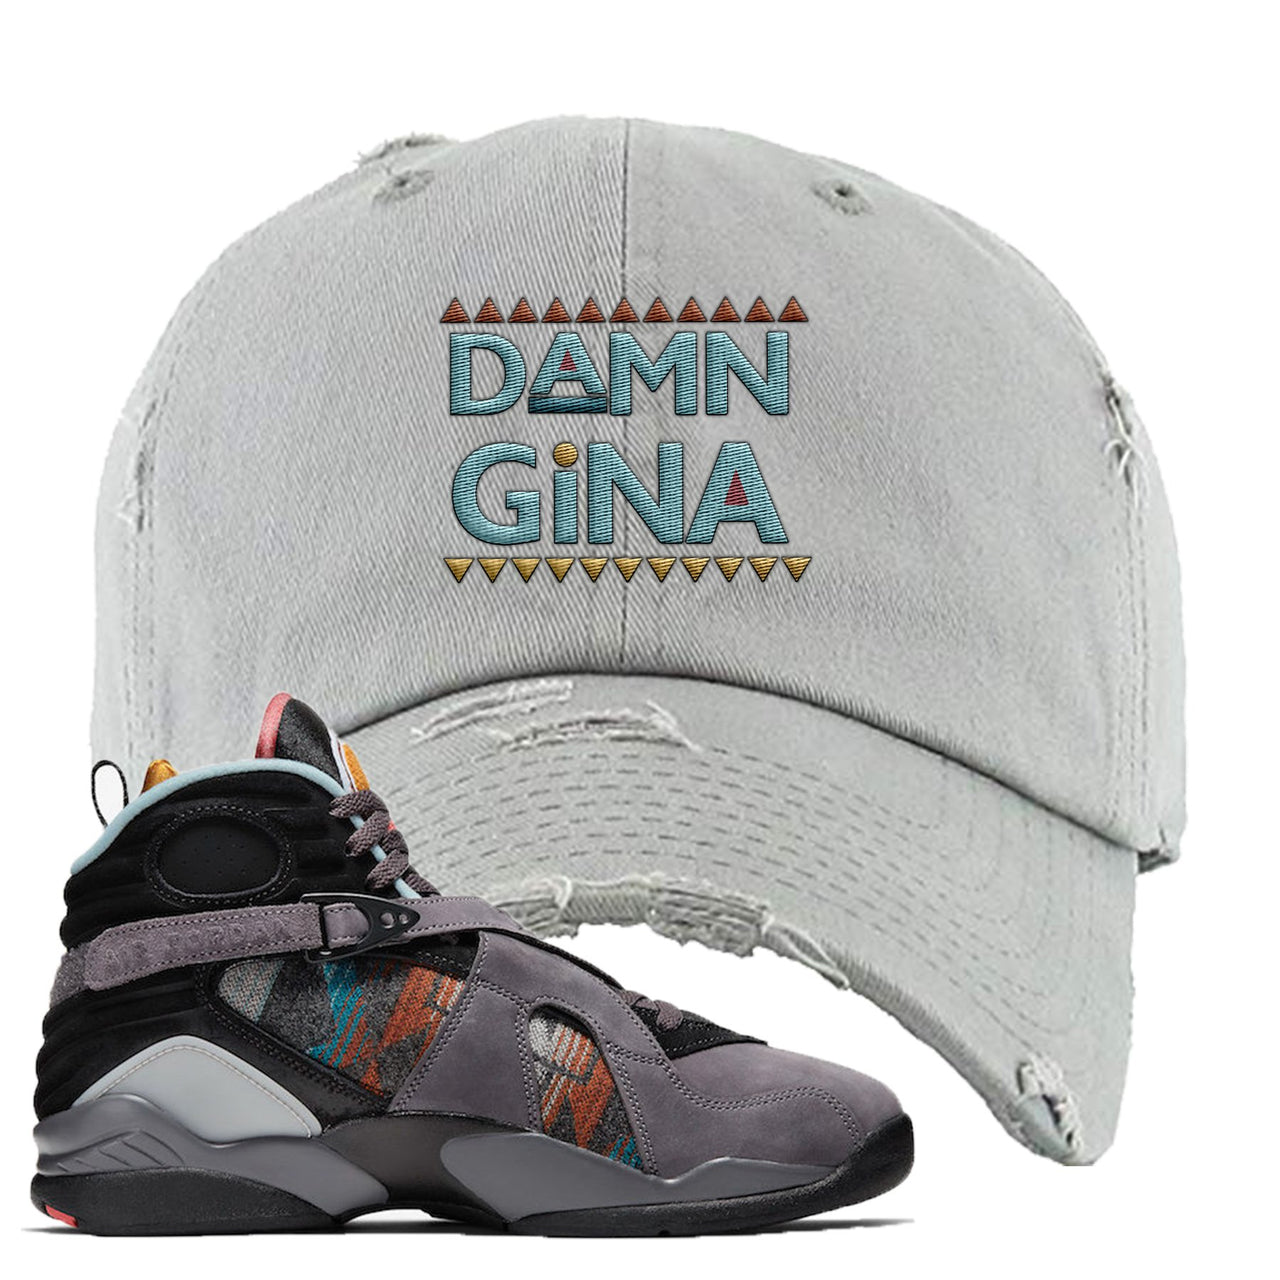 Jordan 8 N7 Pendleton Damn Gina Light Gray Sneaker Hook Up Distressed Dad Hat